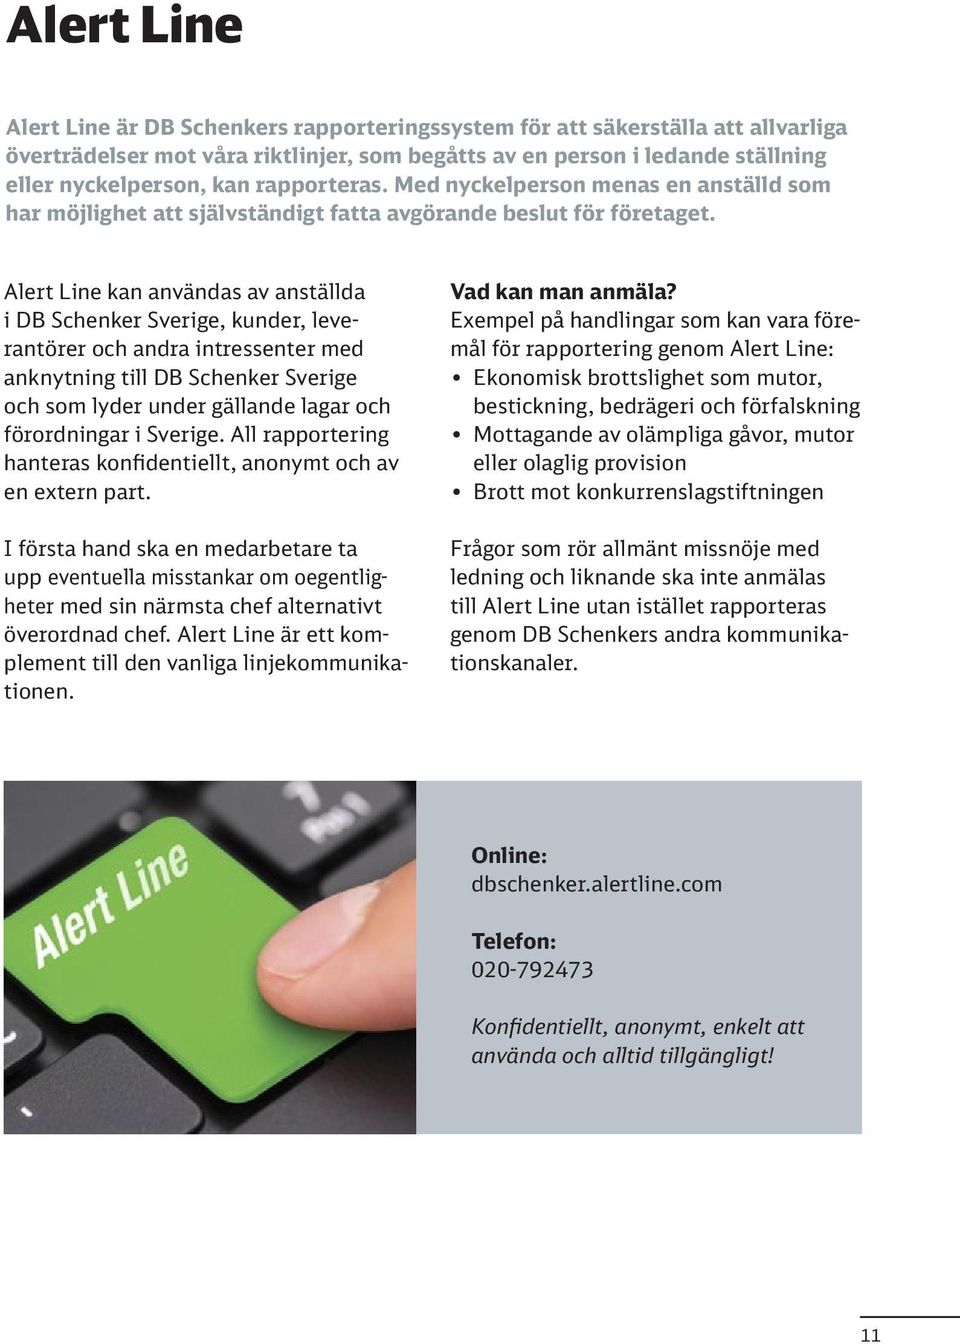 Alert Line kan användas av anställda i DB Schenker Sverige, kunder, leverantörer och andra intressenter med anknytning till DB Schenker Sverige och som lyder under gällande lagar och förordningar i